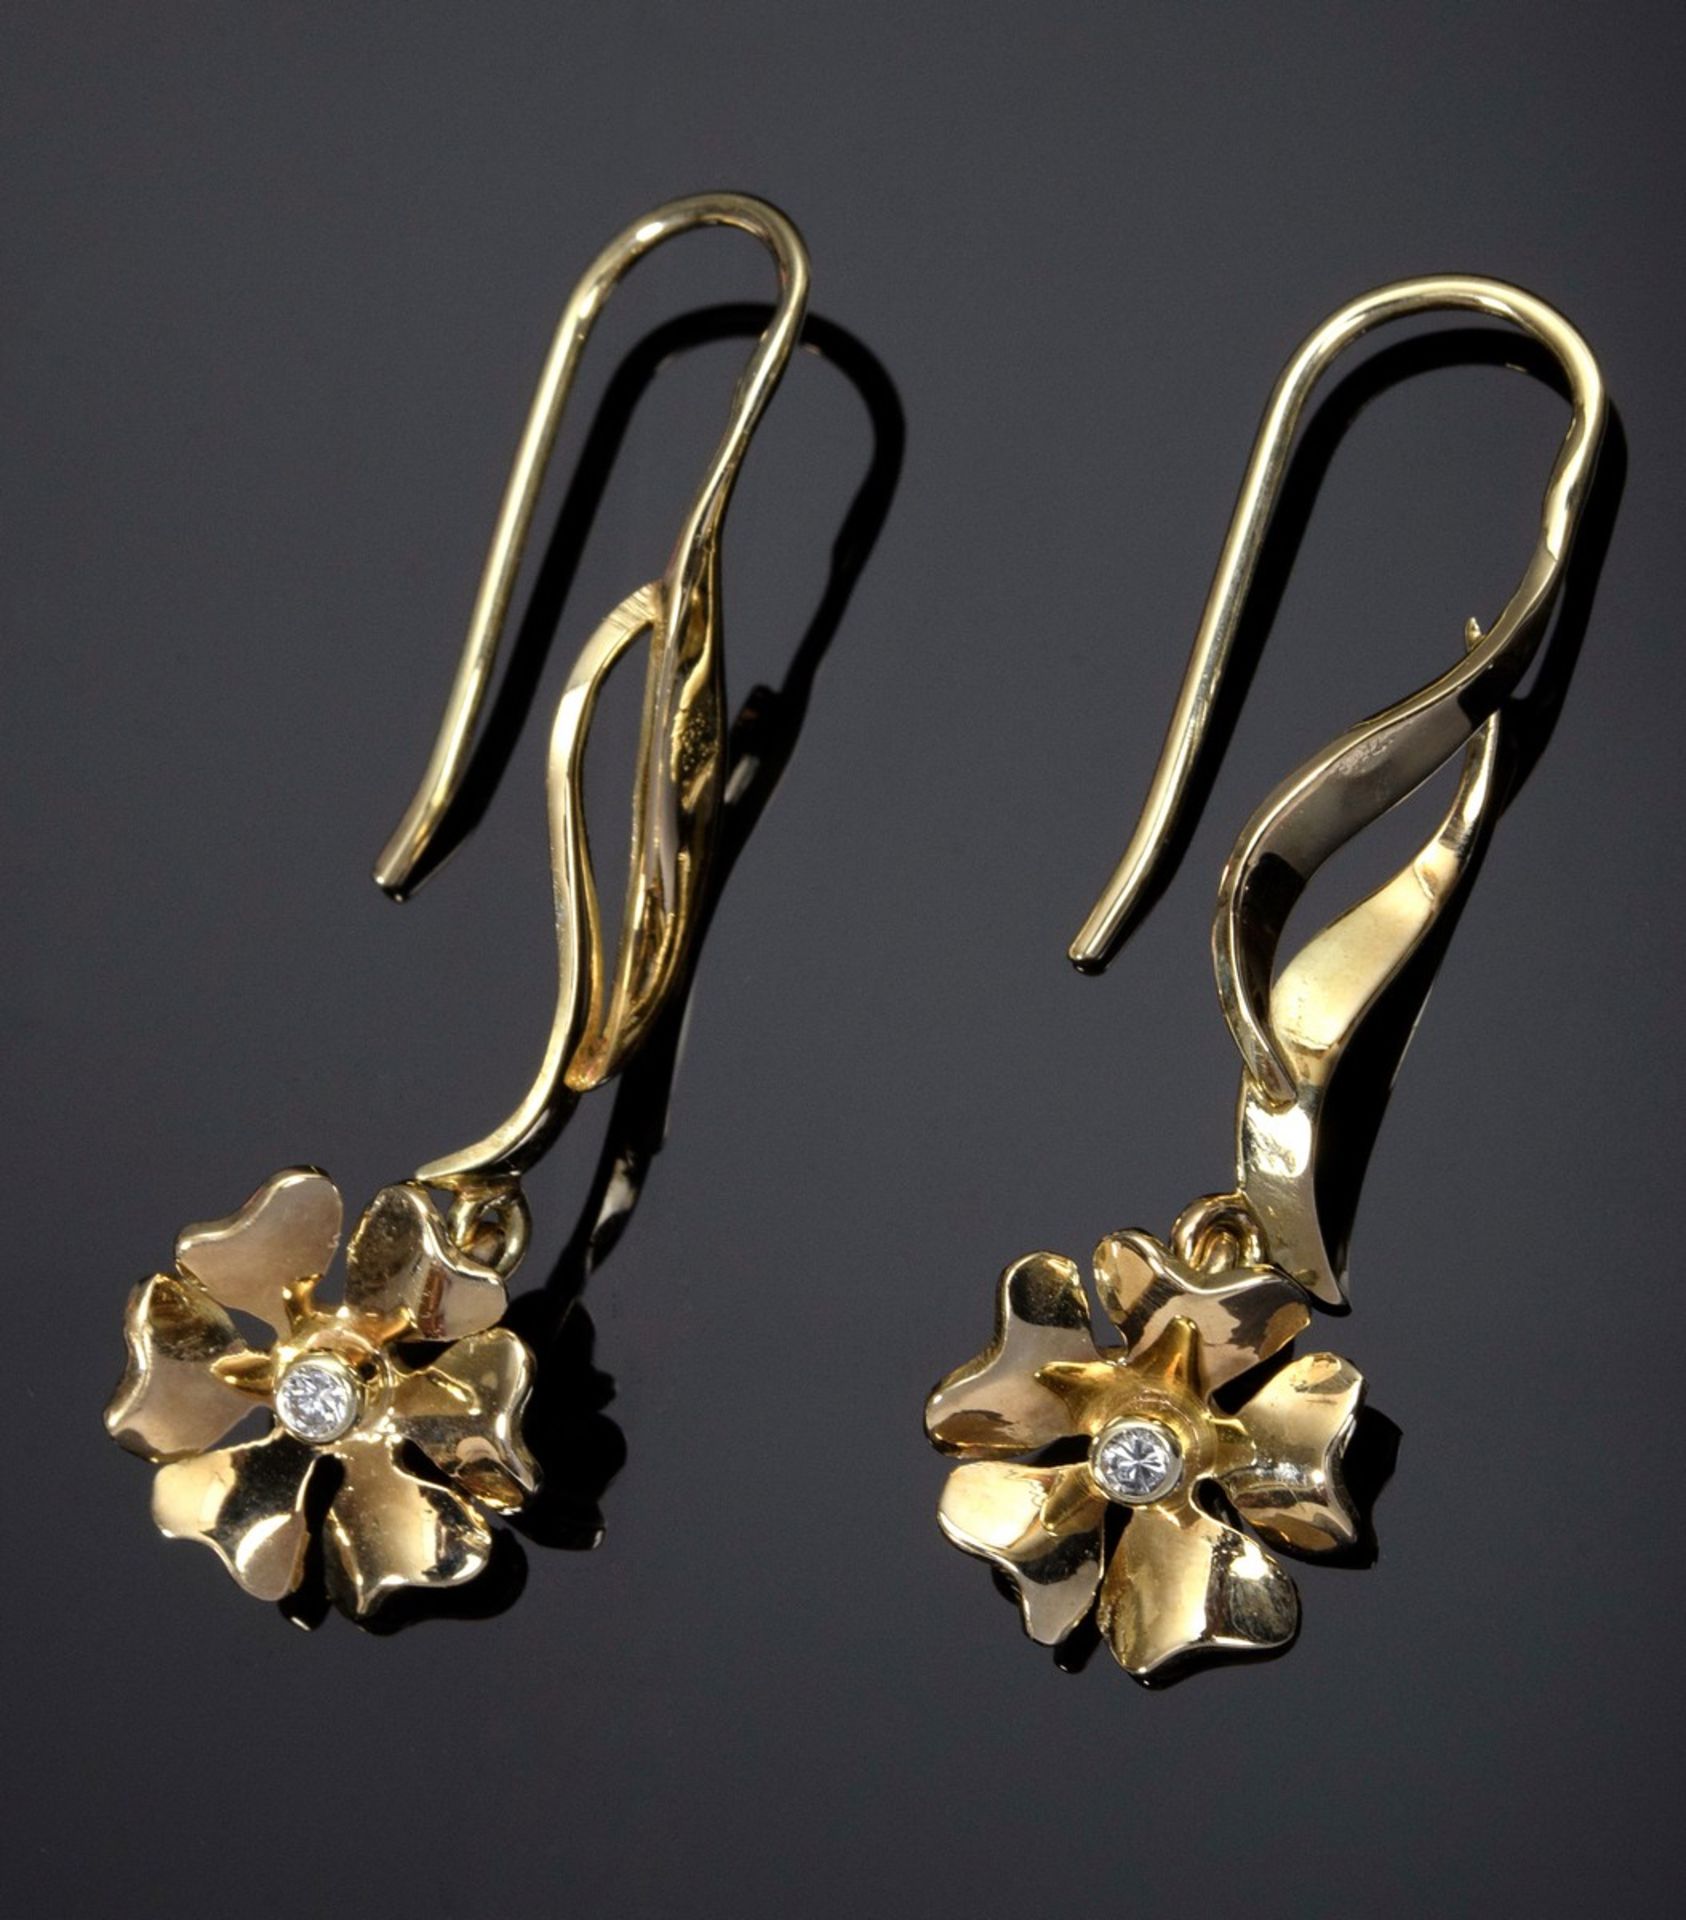 Paar GG 585 "Blüten" Ohrgehänge mit kleinen Brillanten, 4,2g, L. 4cm